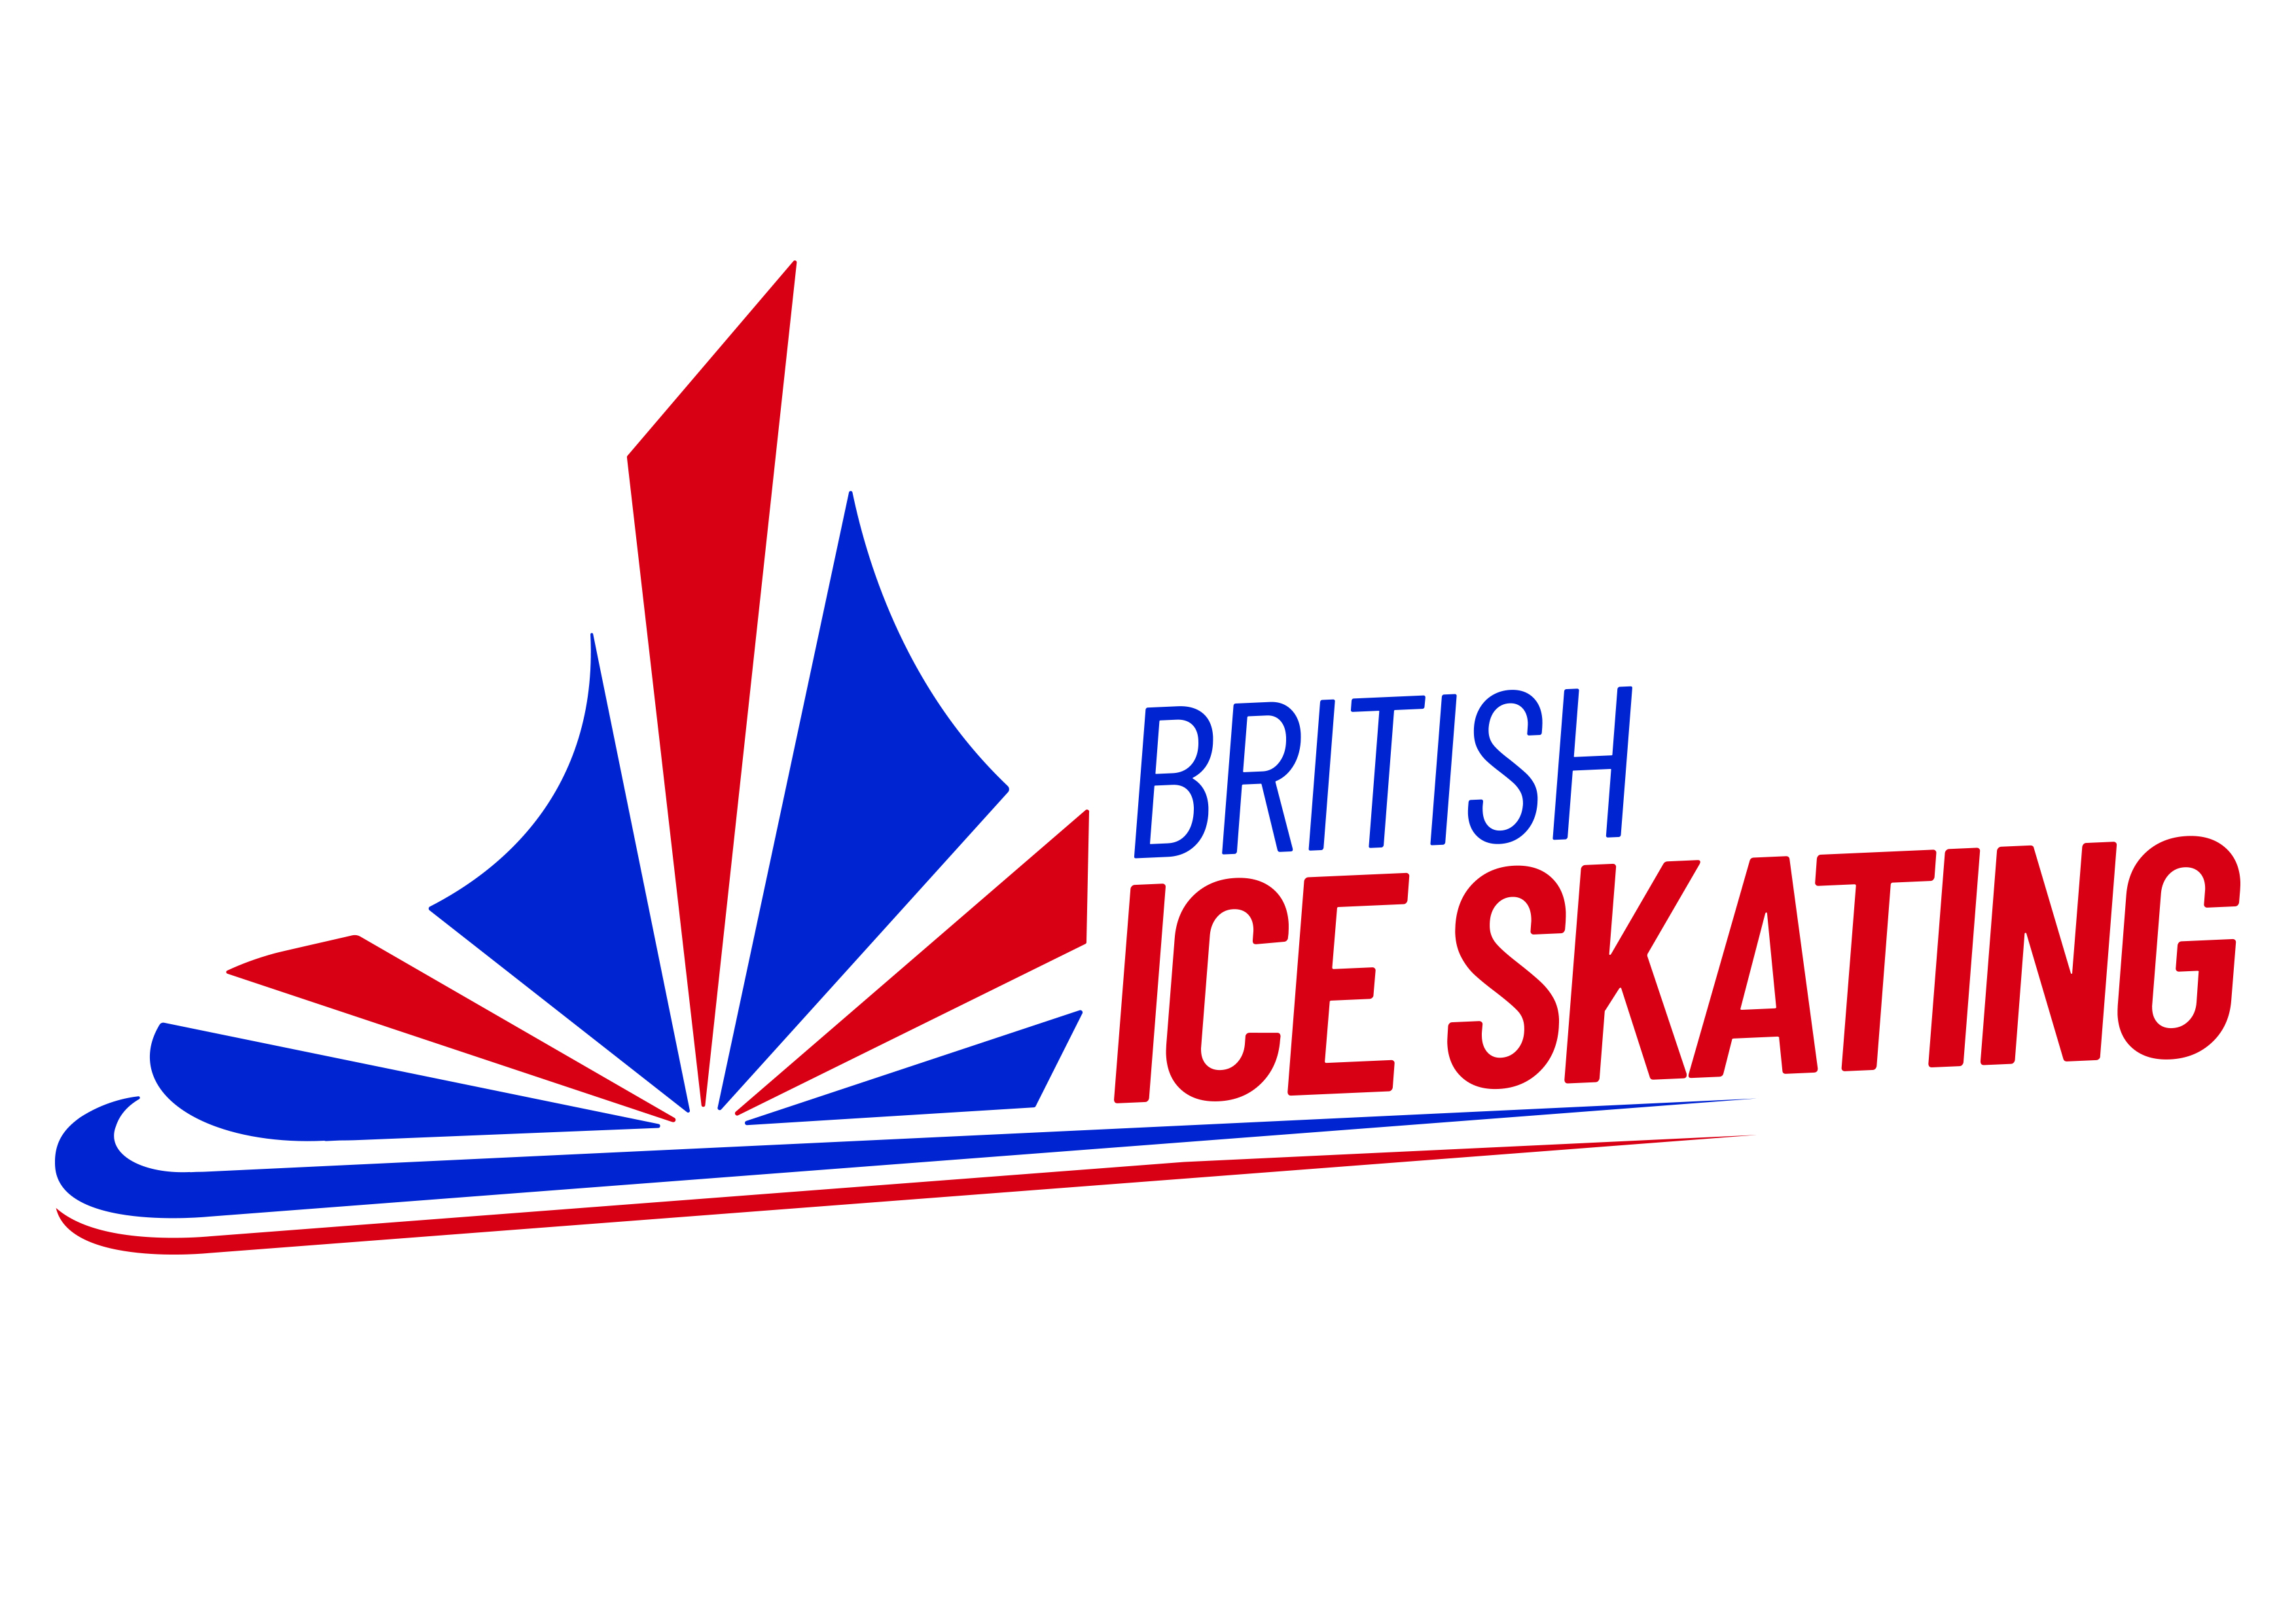 www.iceskating.org.uk